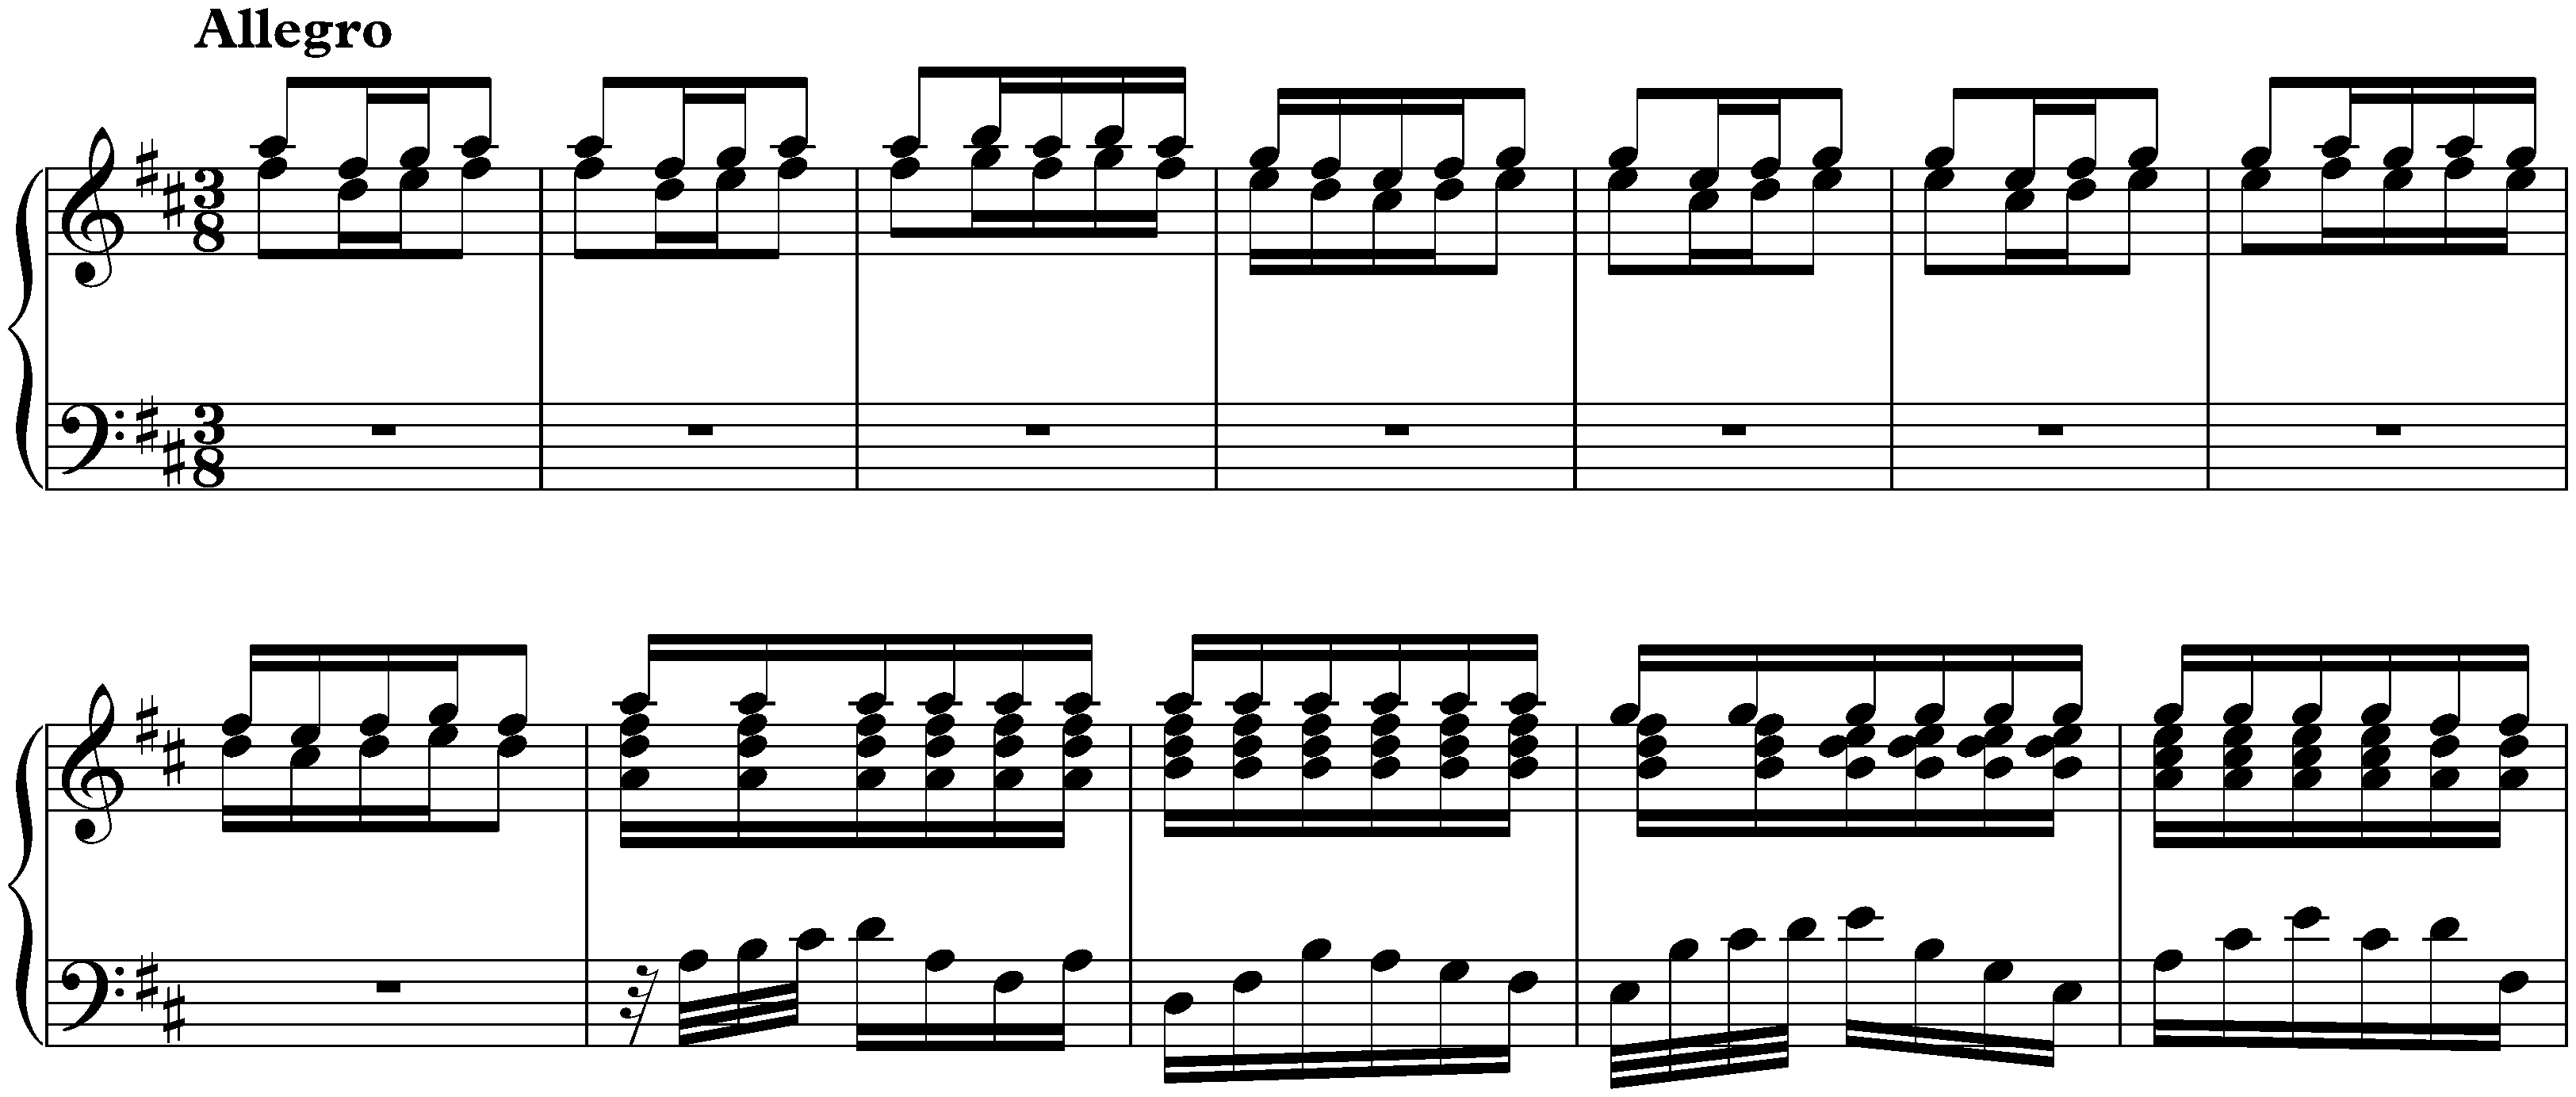 Concerto in D major after Antonio Vivaldi, BWV 972; 3. Allegro